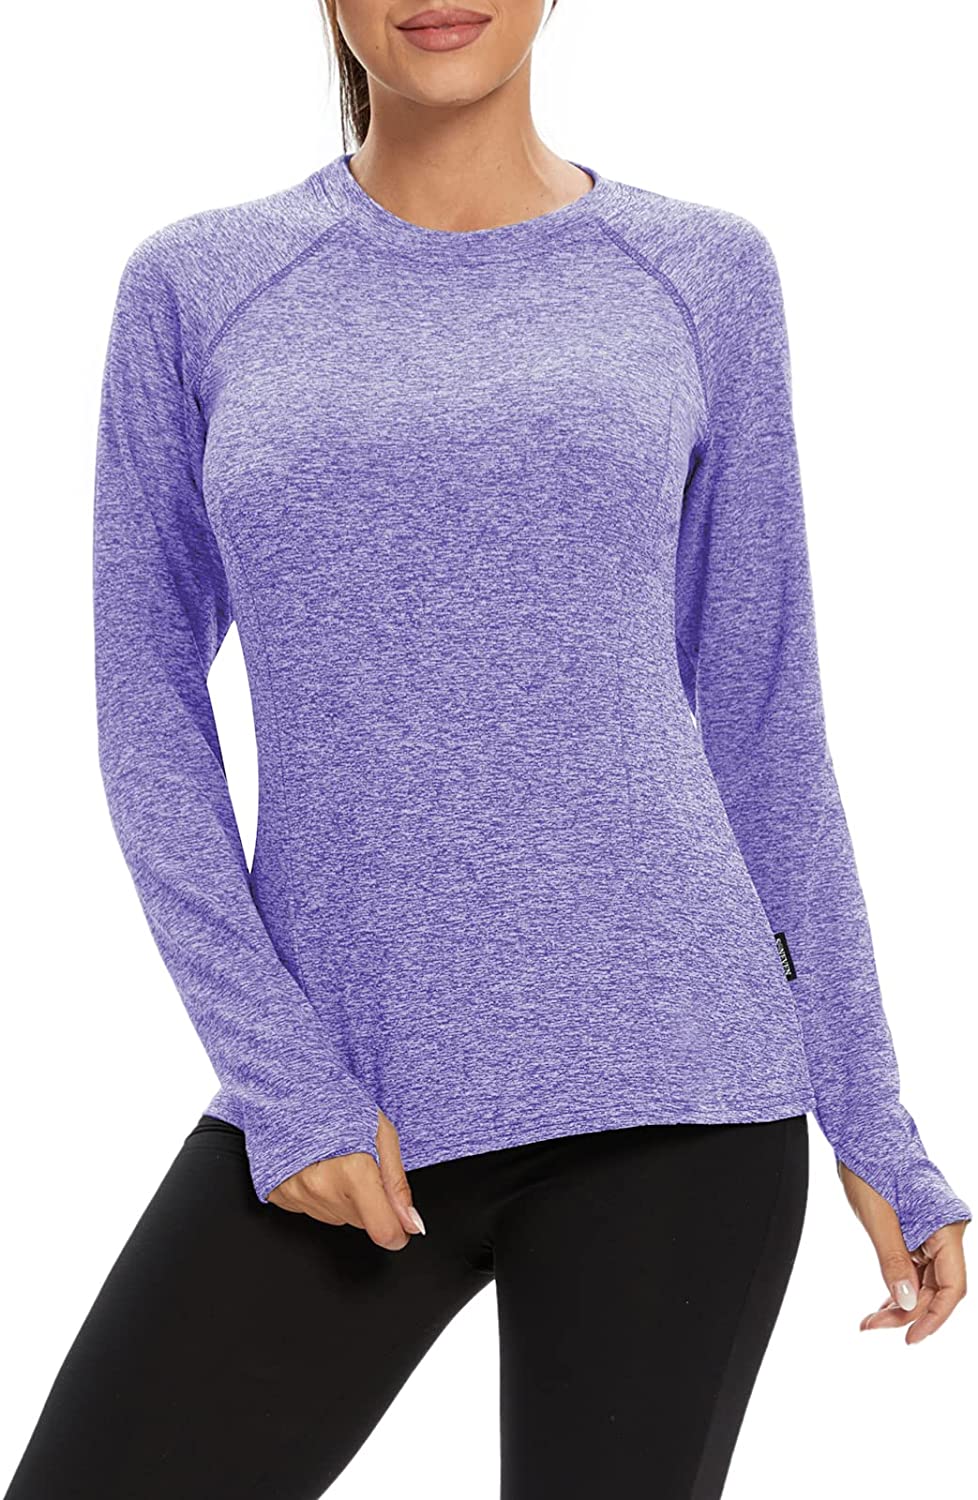 thumbnail 27  - Soneven Women Fleece Thermal Long Sleeve Running Shirt Workout Tops Moisture Wic